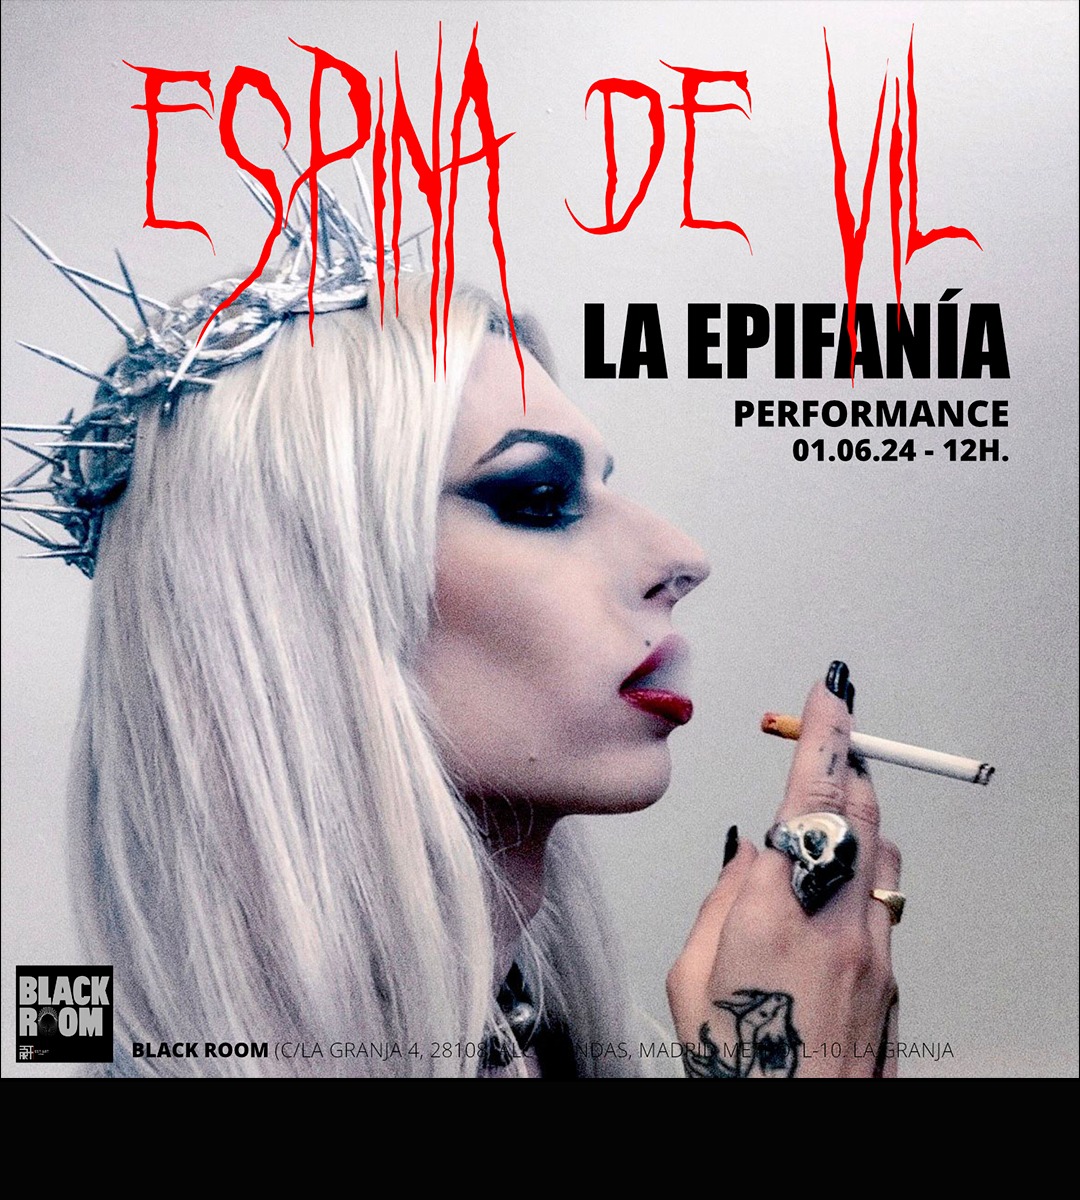 performance de ESPINA DE VIL que clausura su expo “LA HEREJE” | BLACK ROOM Sponsored by EST_ART Space, Alcobendas, Madrid